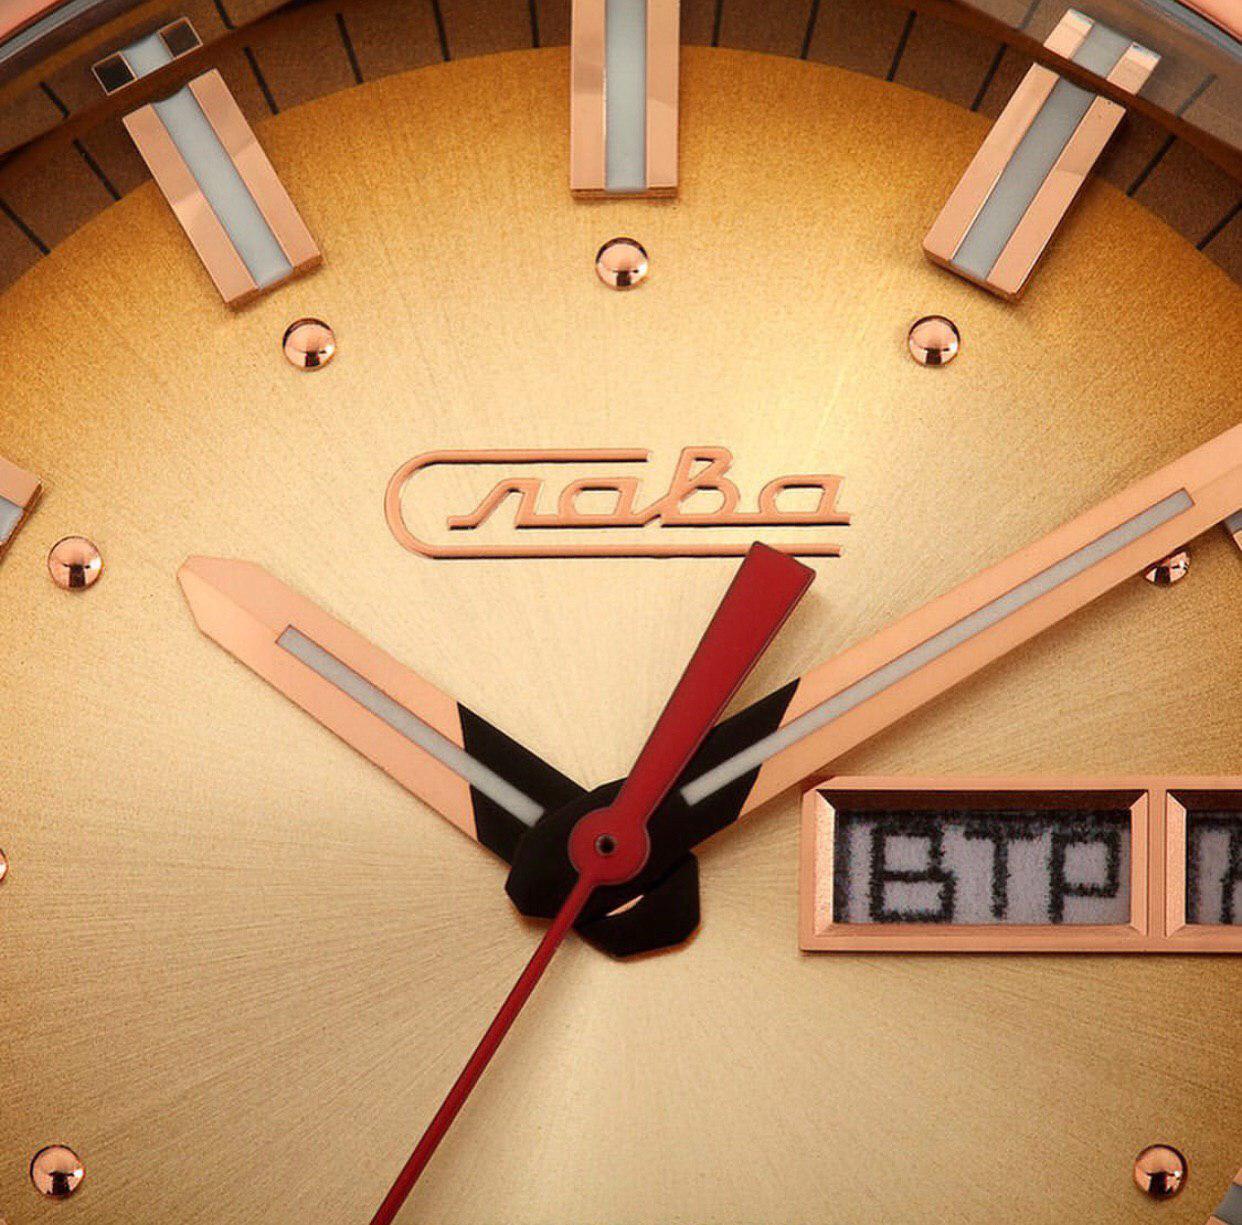 Магазин часов слава. Часы Слава Эра. Часы Erax. Модели часов Слава. Часы Слава Эра модель 702.